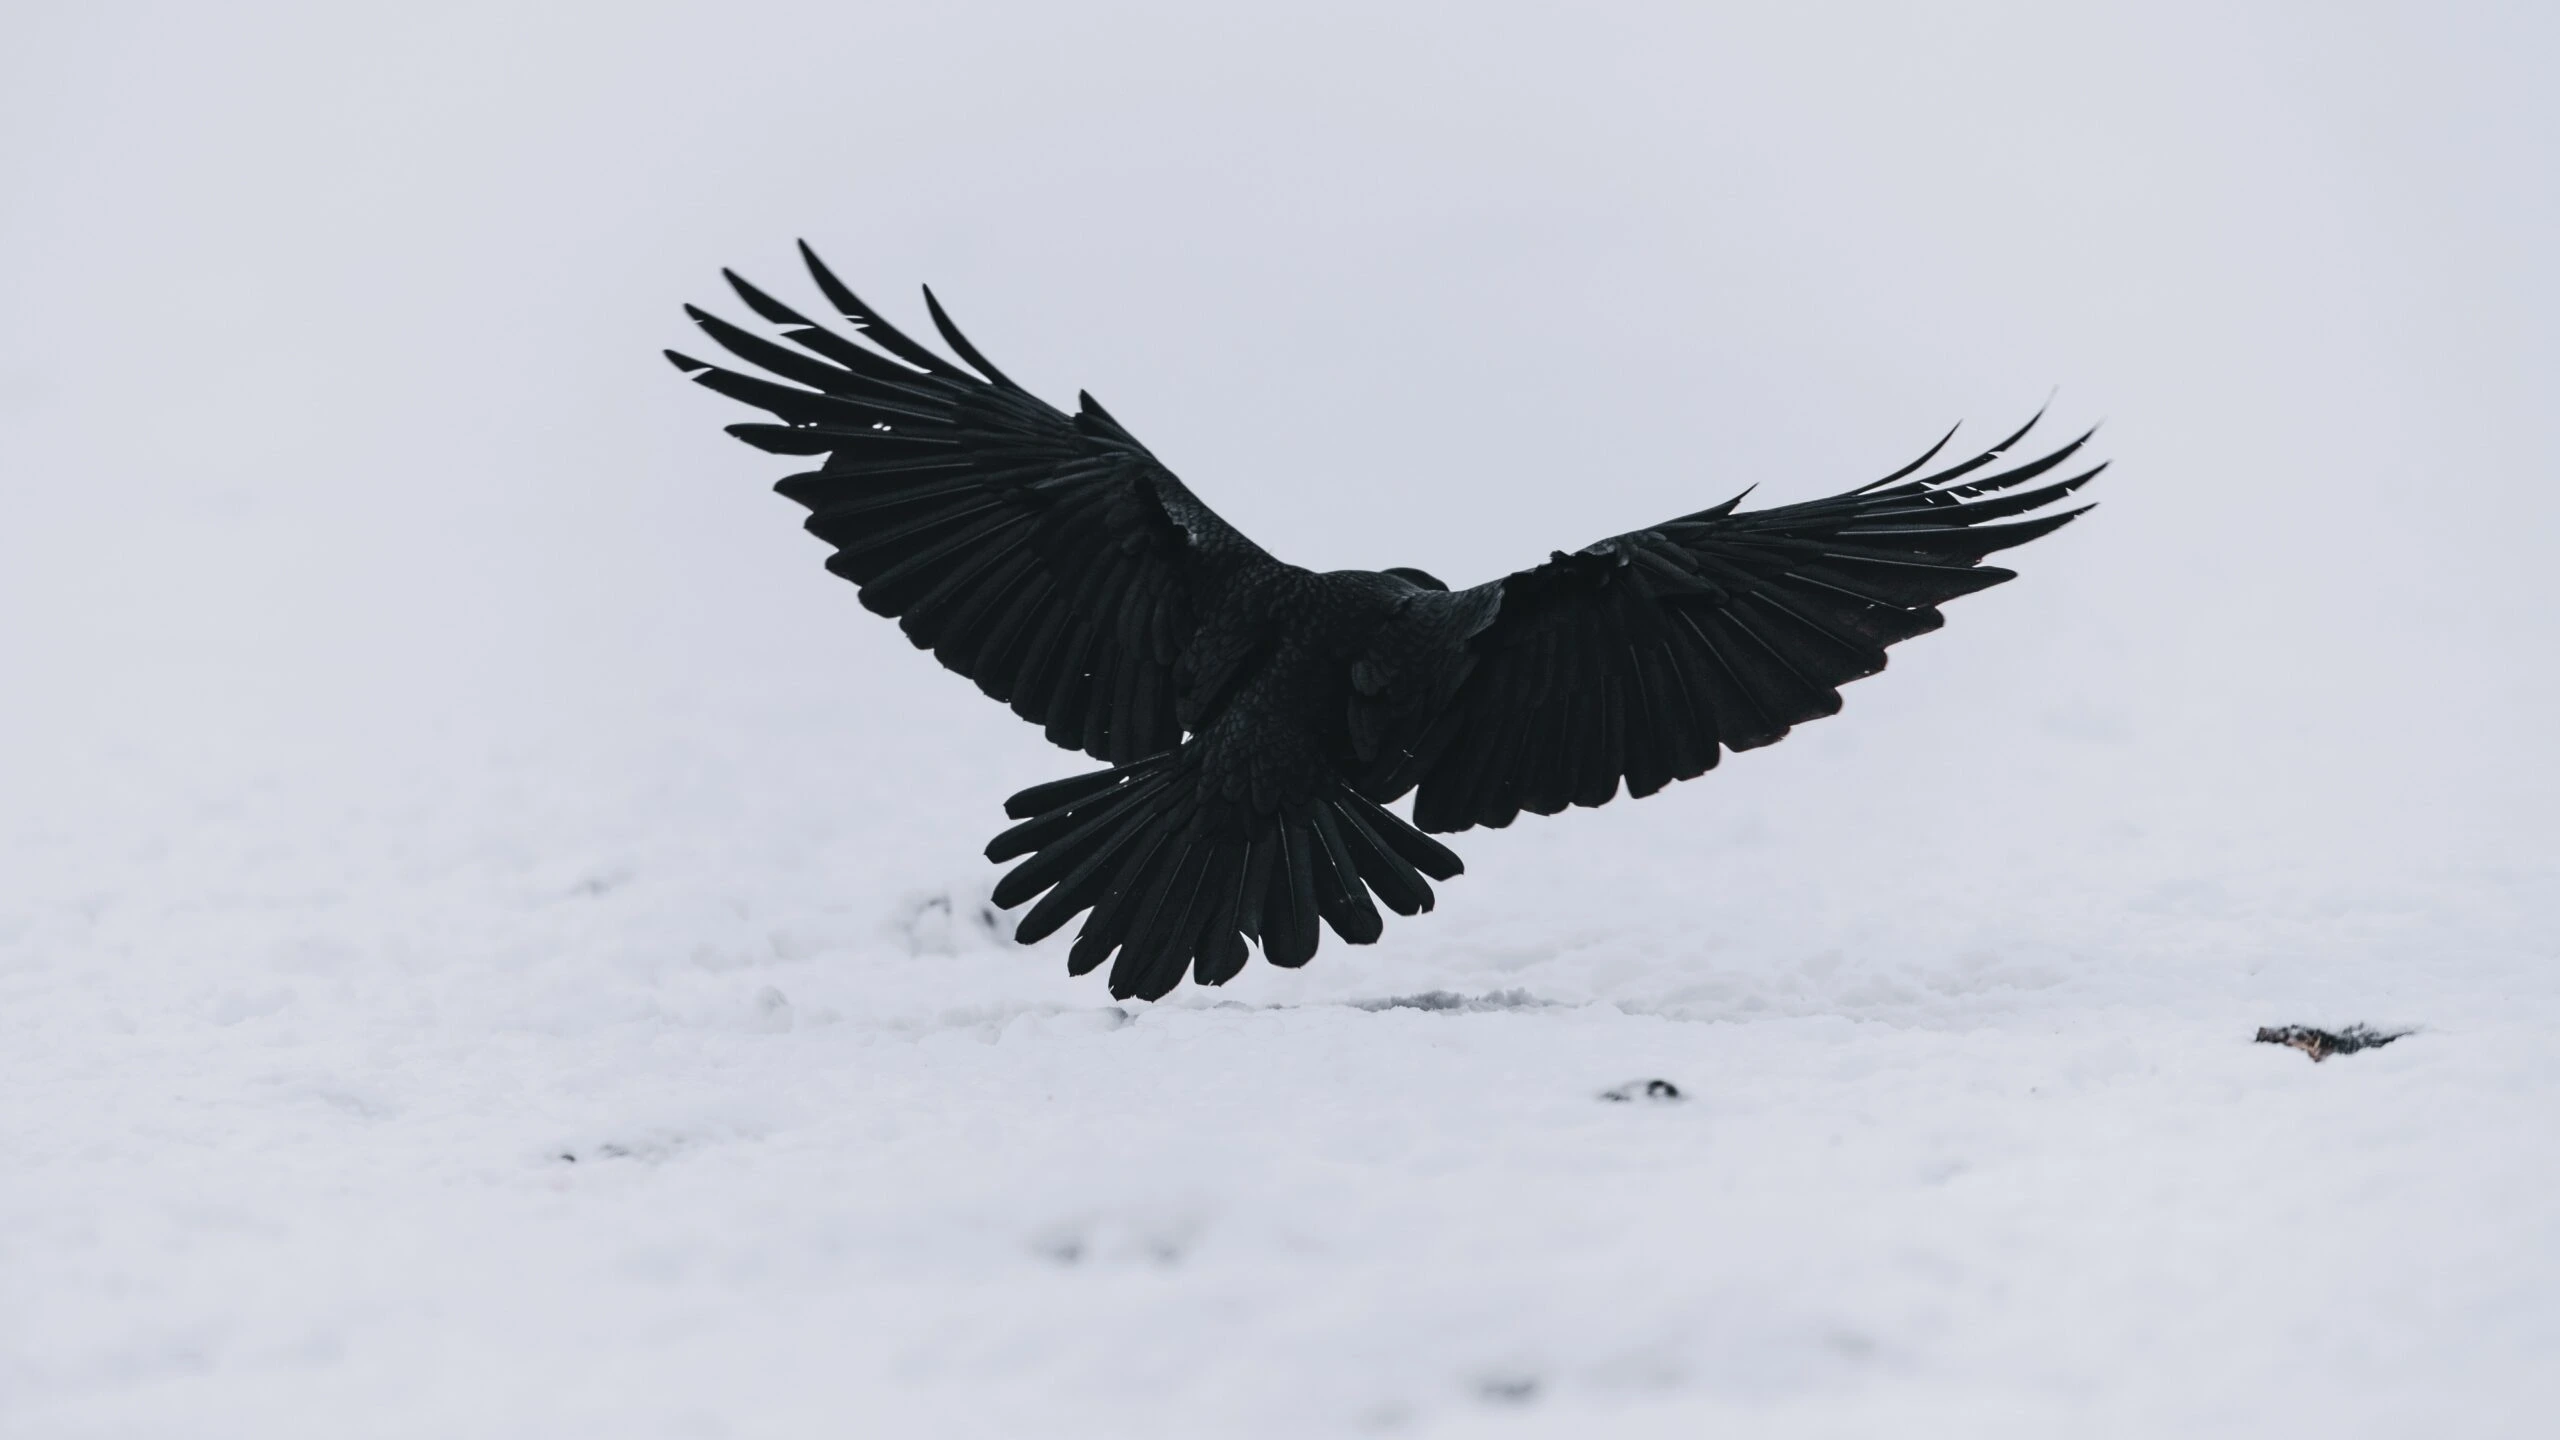 niklas-veenhuis-Black Crow in flight wings extended-unsplash